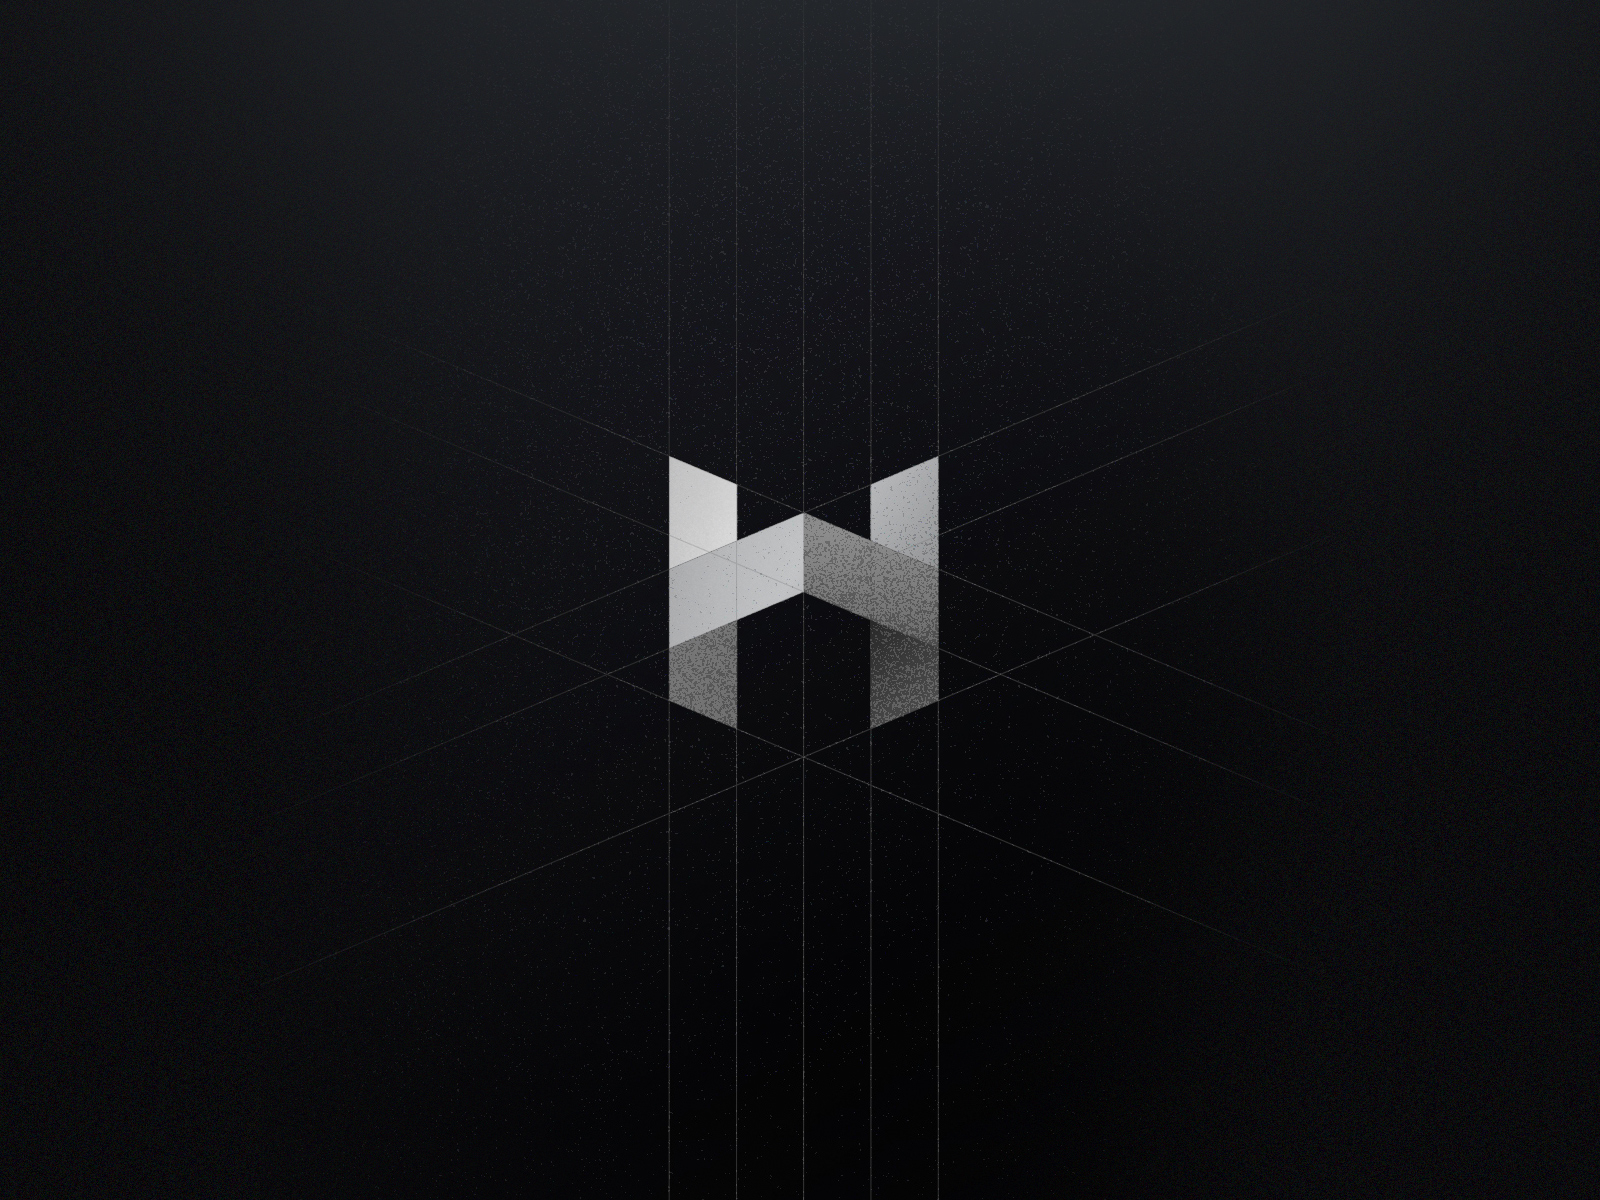 H logo by Jithesh Lakshman on Dribbble